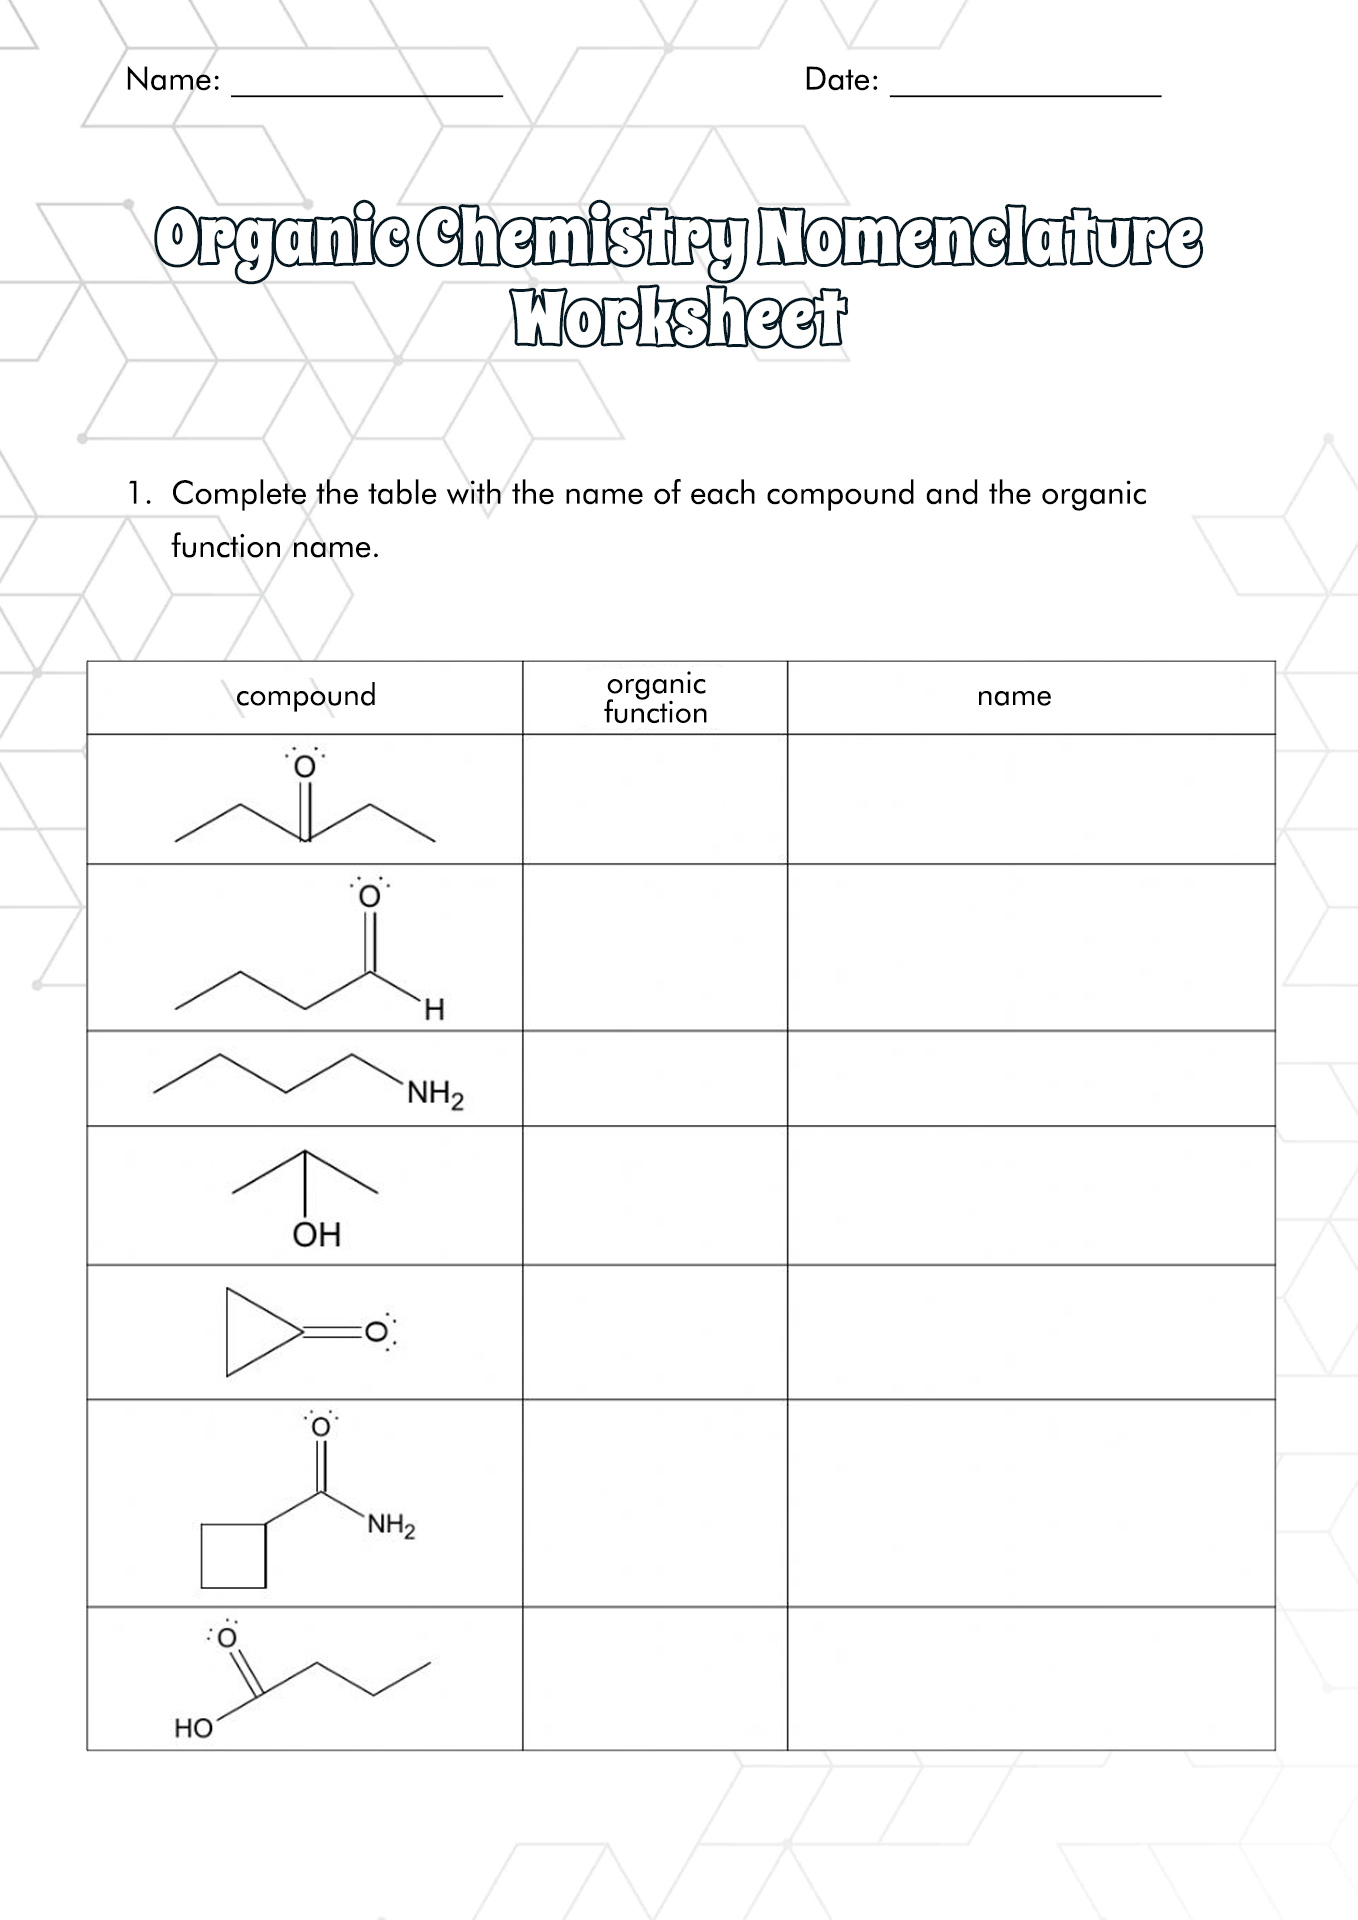 Organic Chemistry Nomenclature Worksheet Image